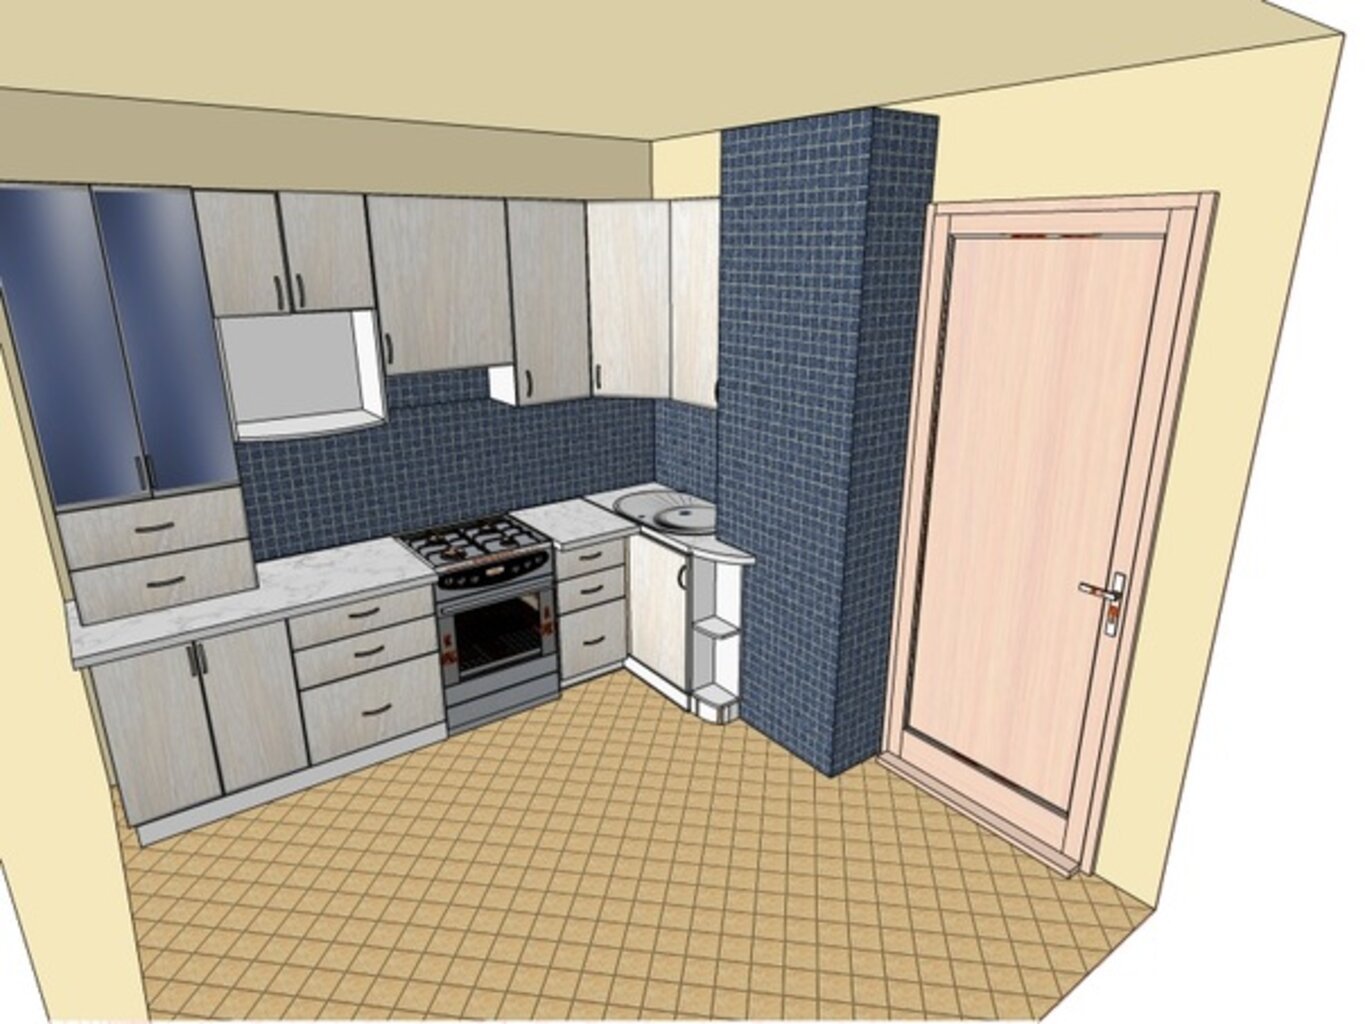 планировка кухни 9м2 с холодильником и диваном